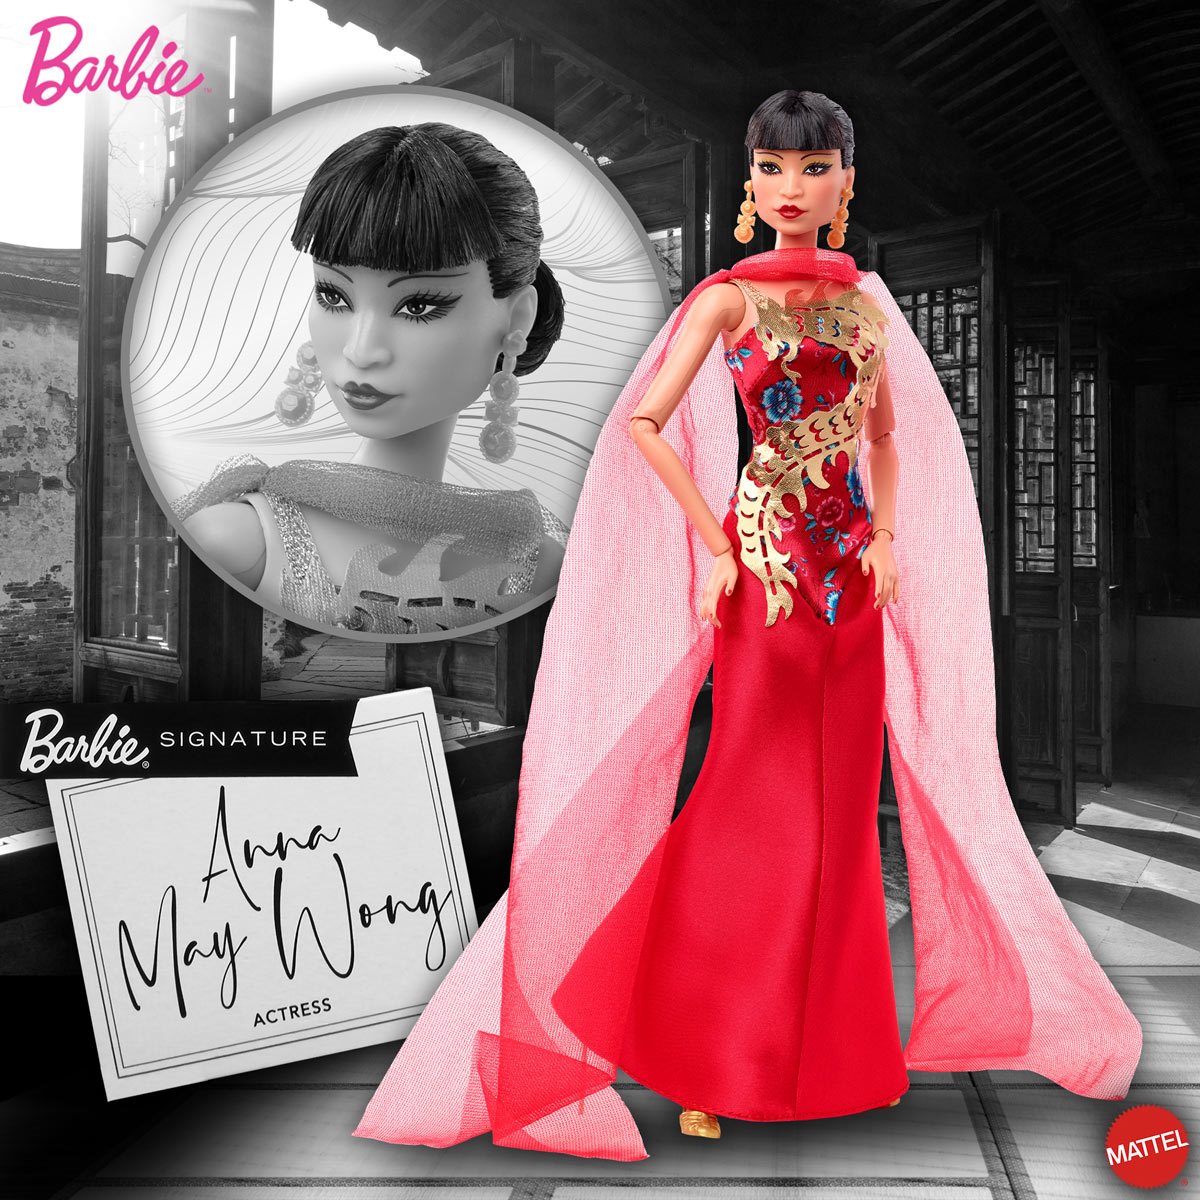 Vechter Overweldigen verraad Barbie Inspiring Women Anna May Wong Doll